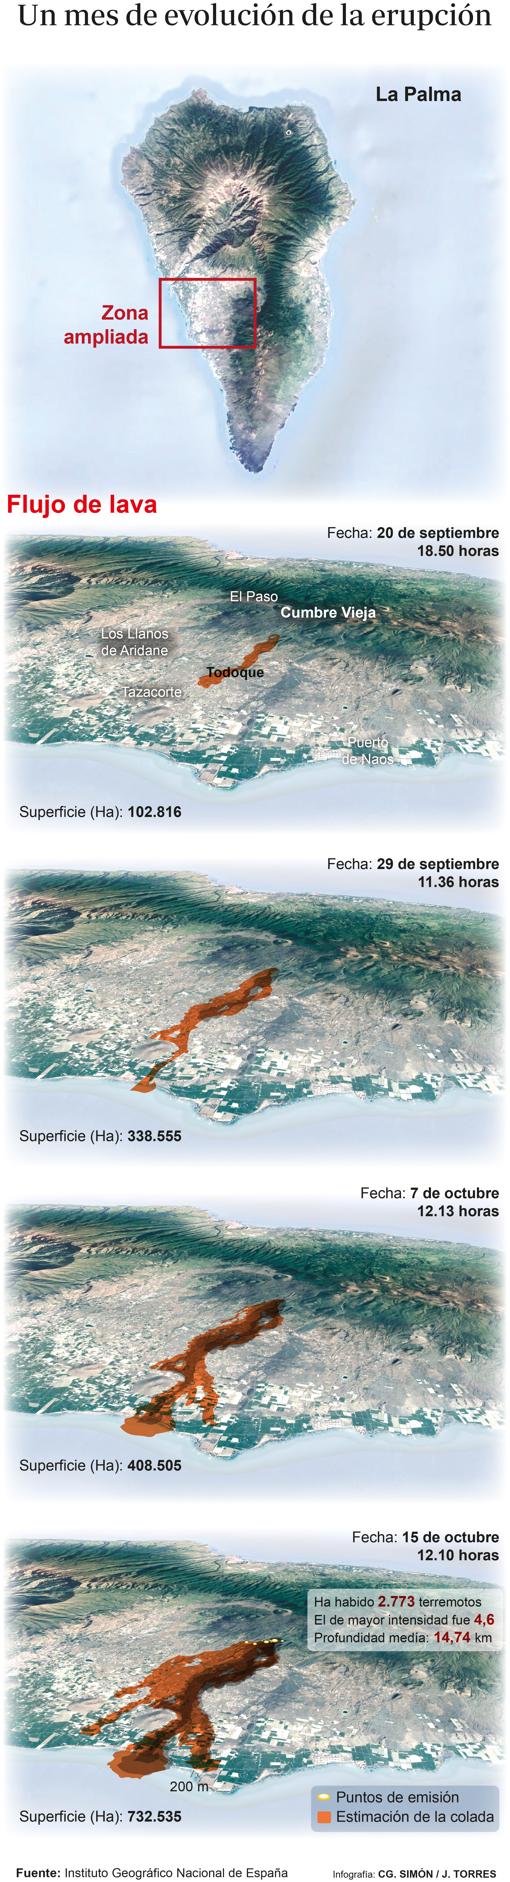 El volcán de La Palma continúa rugiendo un mes después y sin visos de apagarse